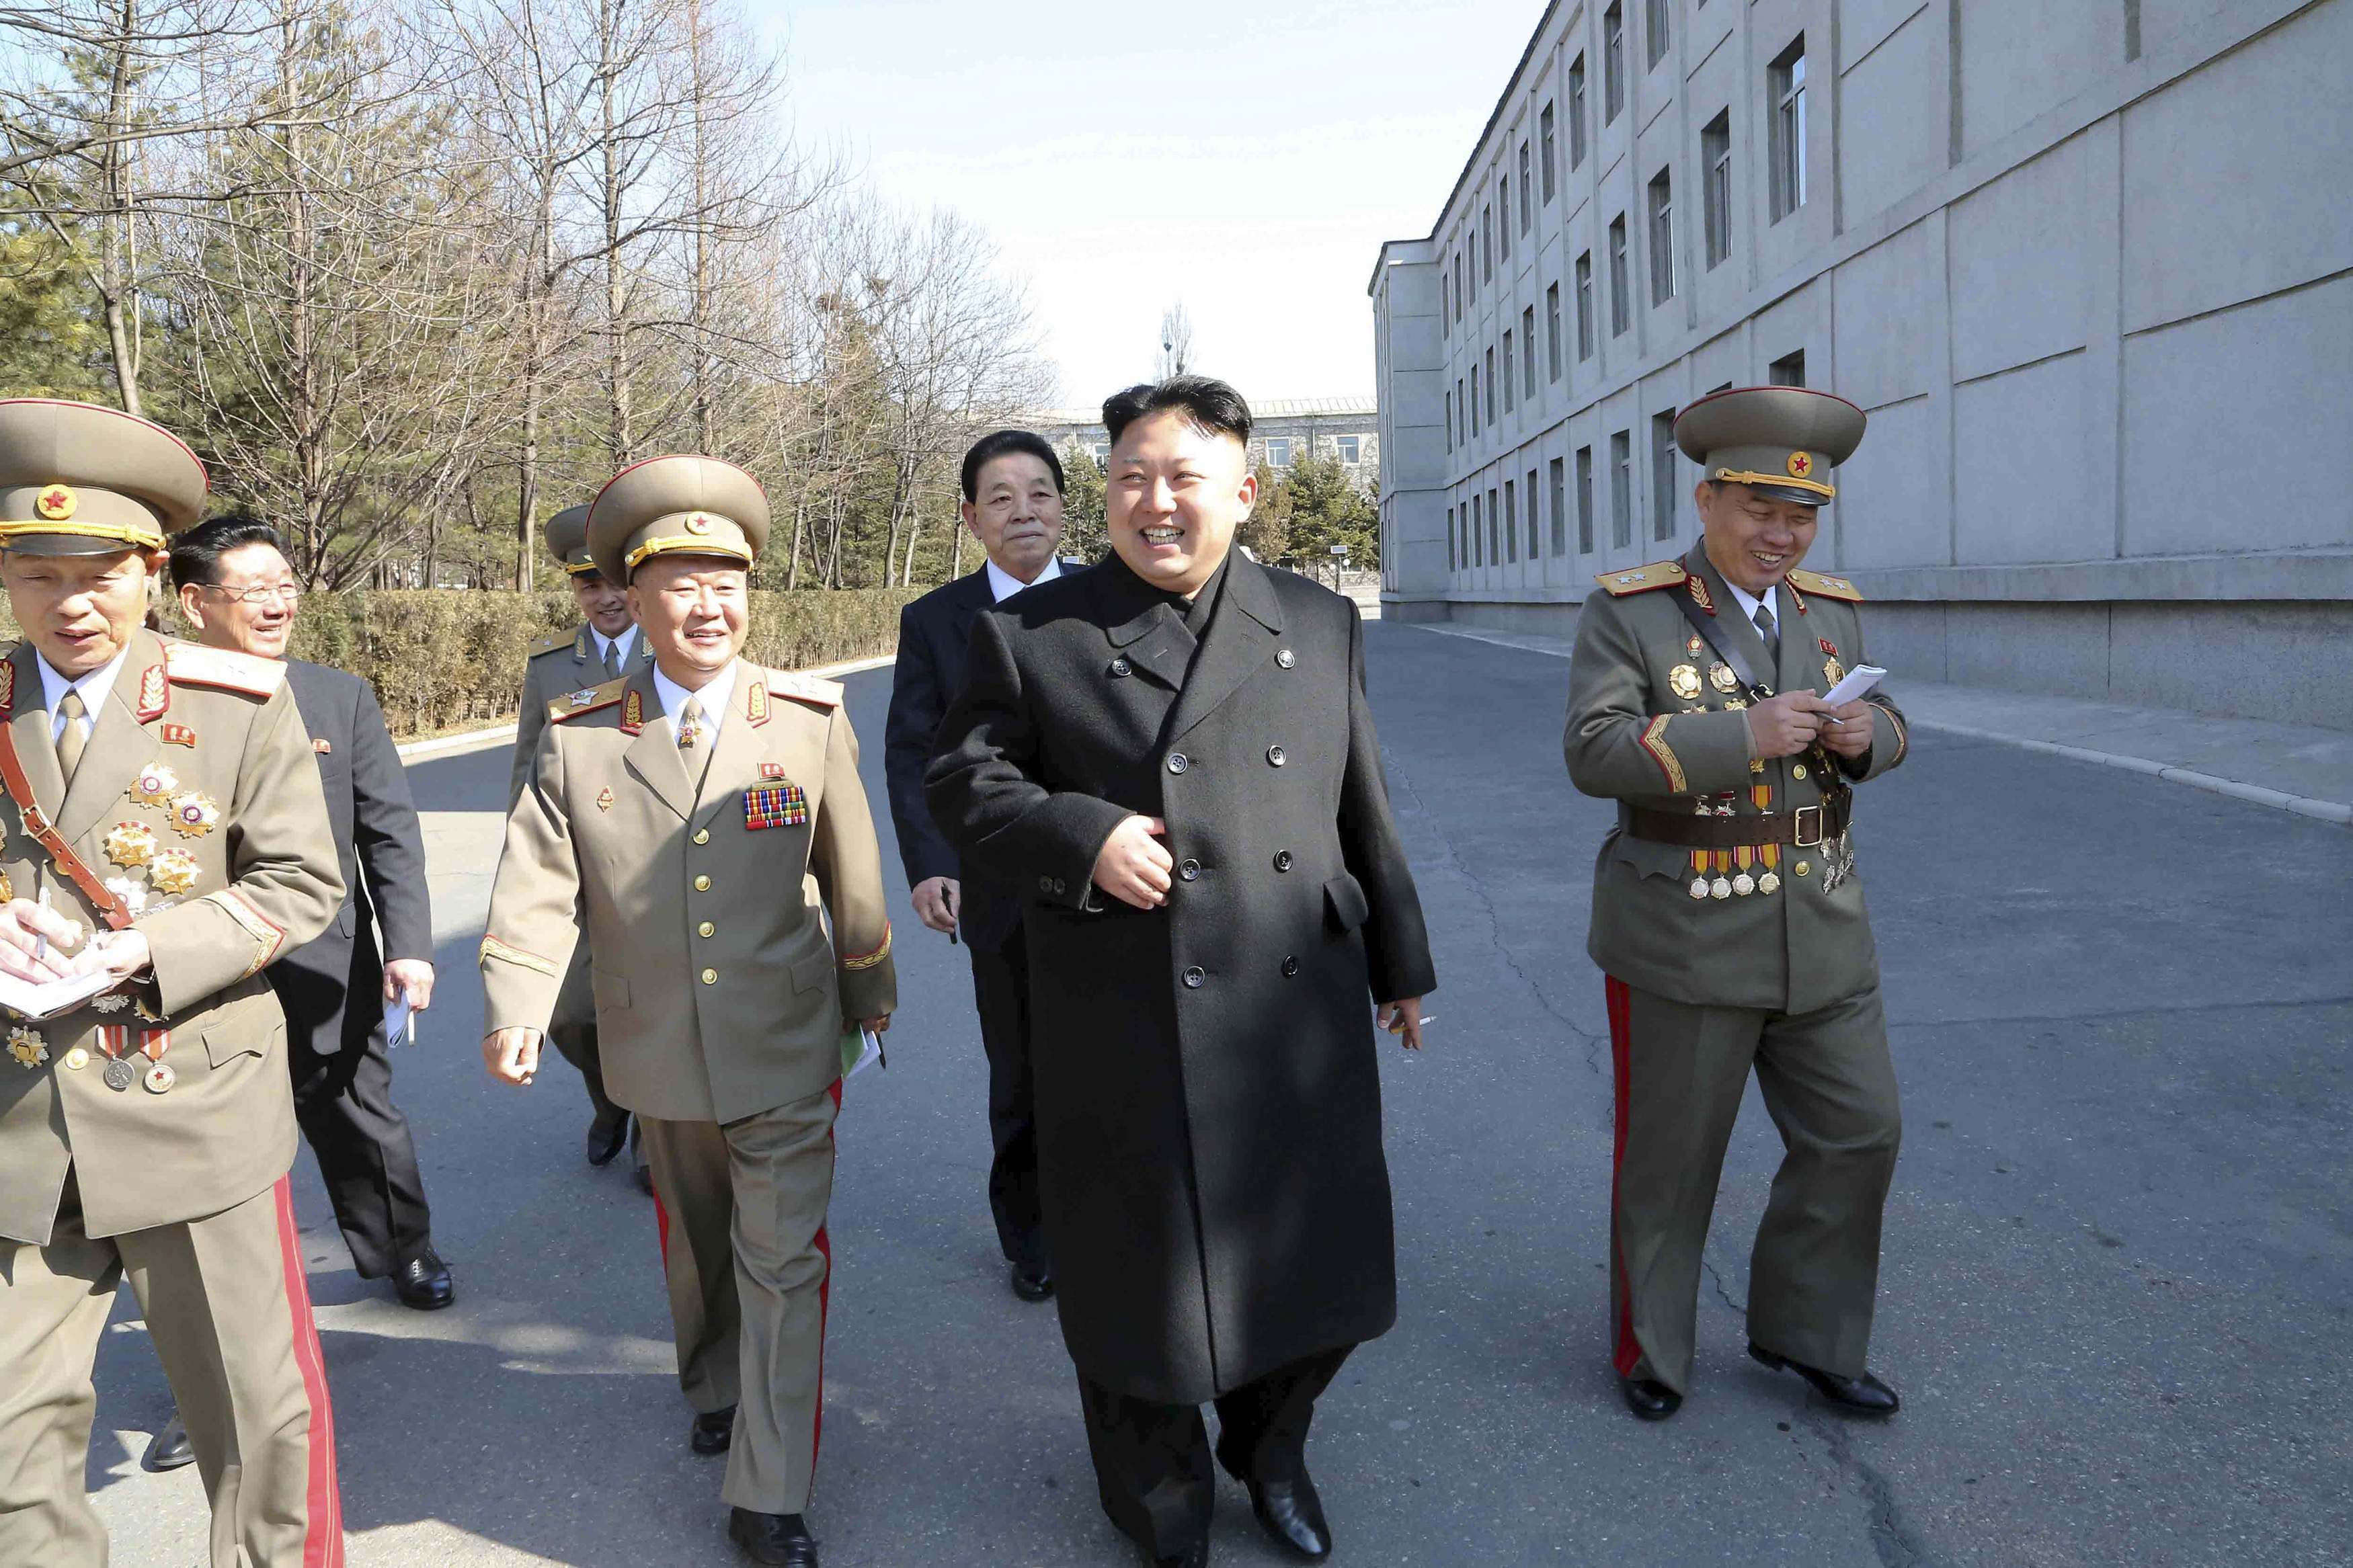 Βόρεια Κορέα: Δικάζονται ως “εχθροί του κράτους” δυο Αμερικανοί